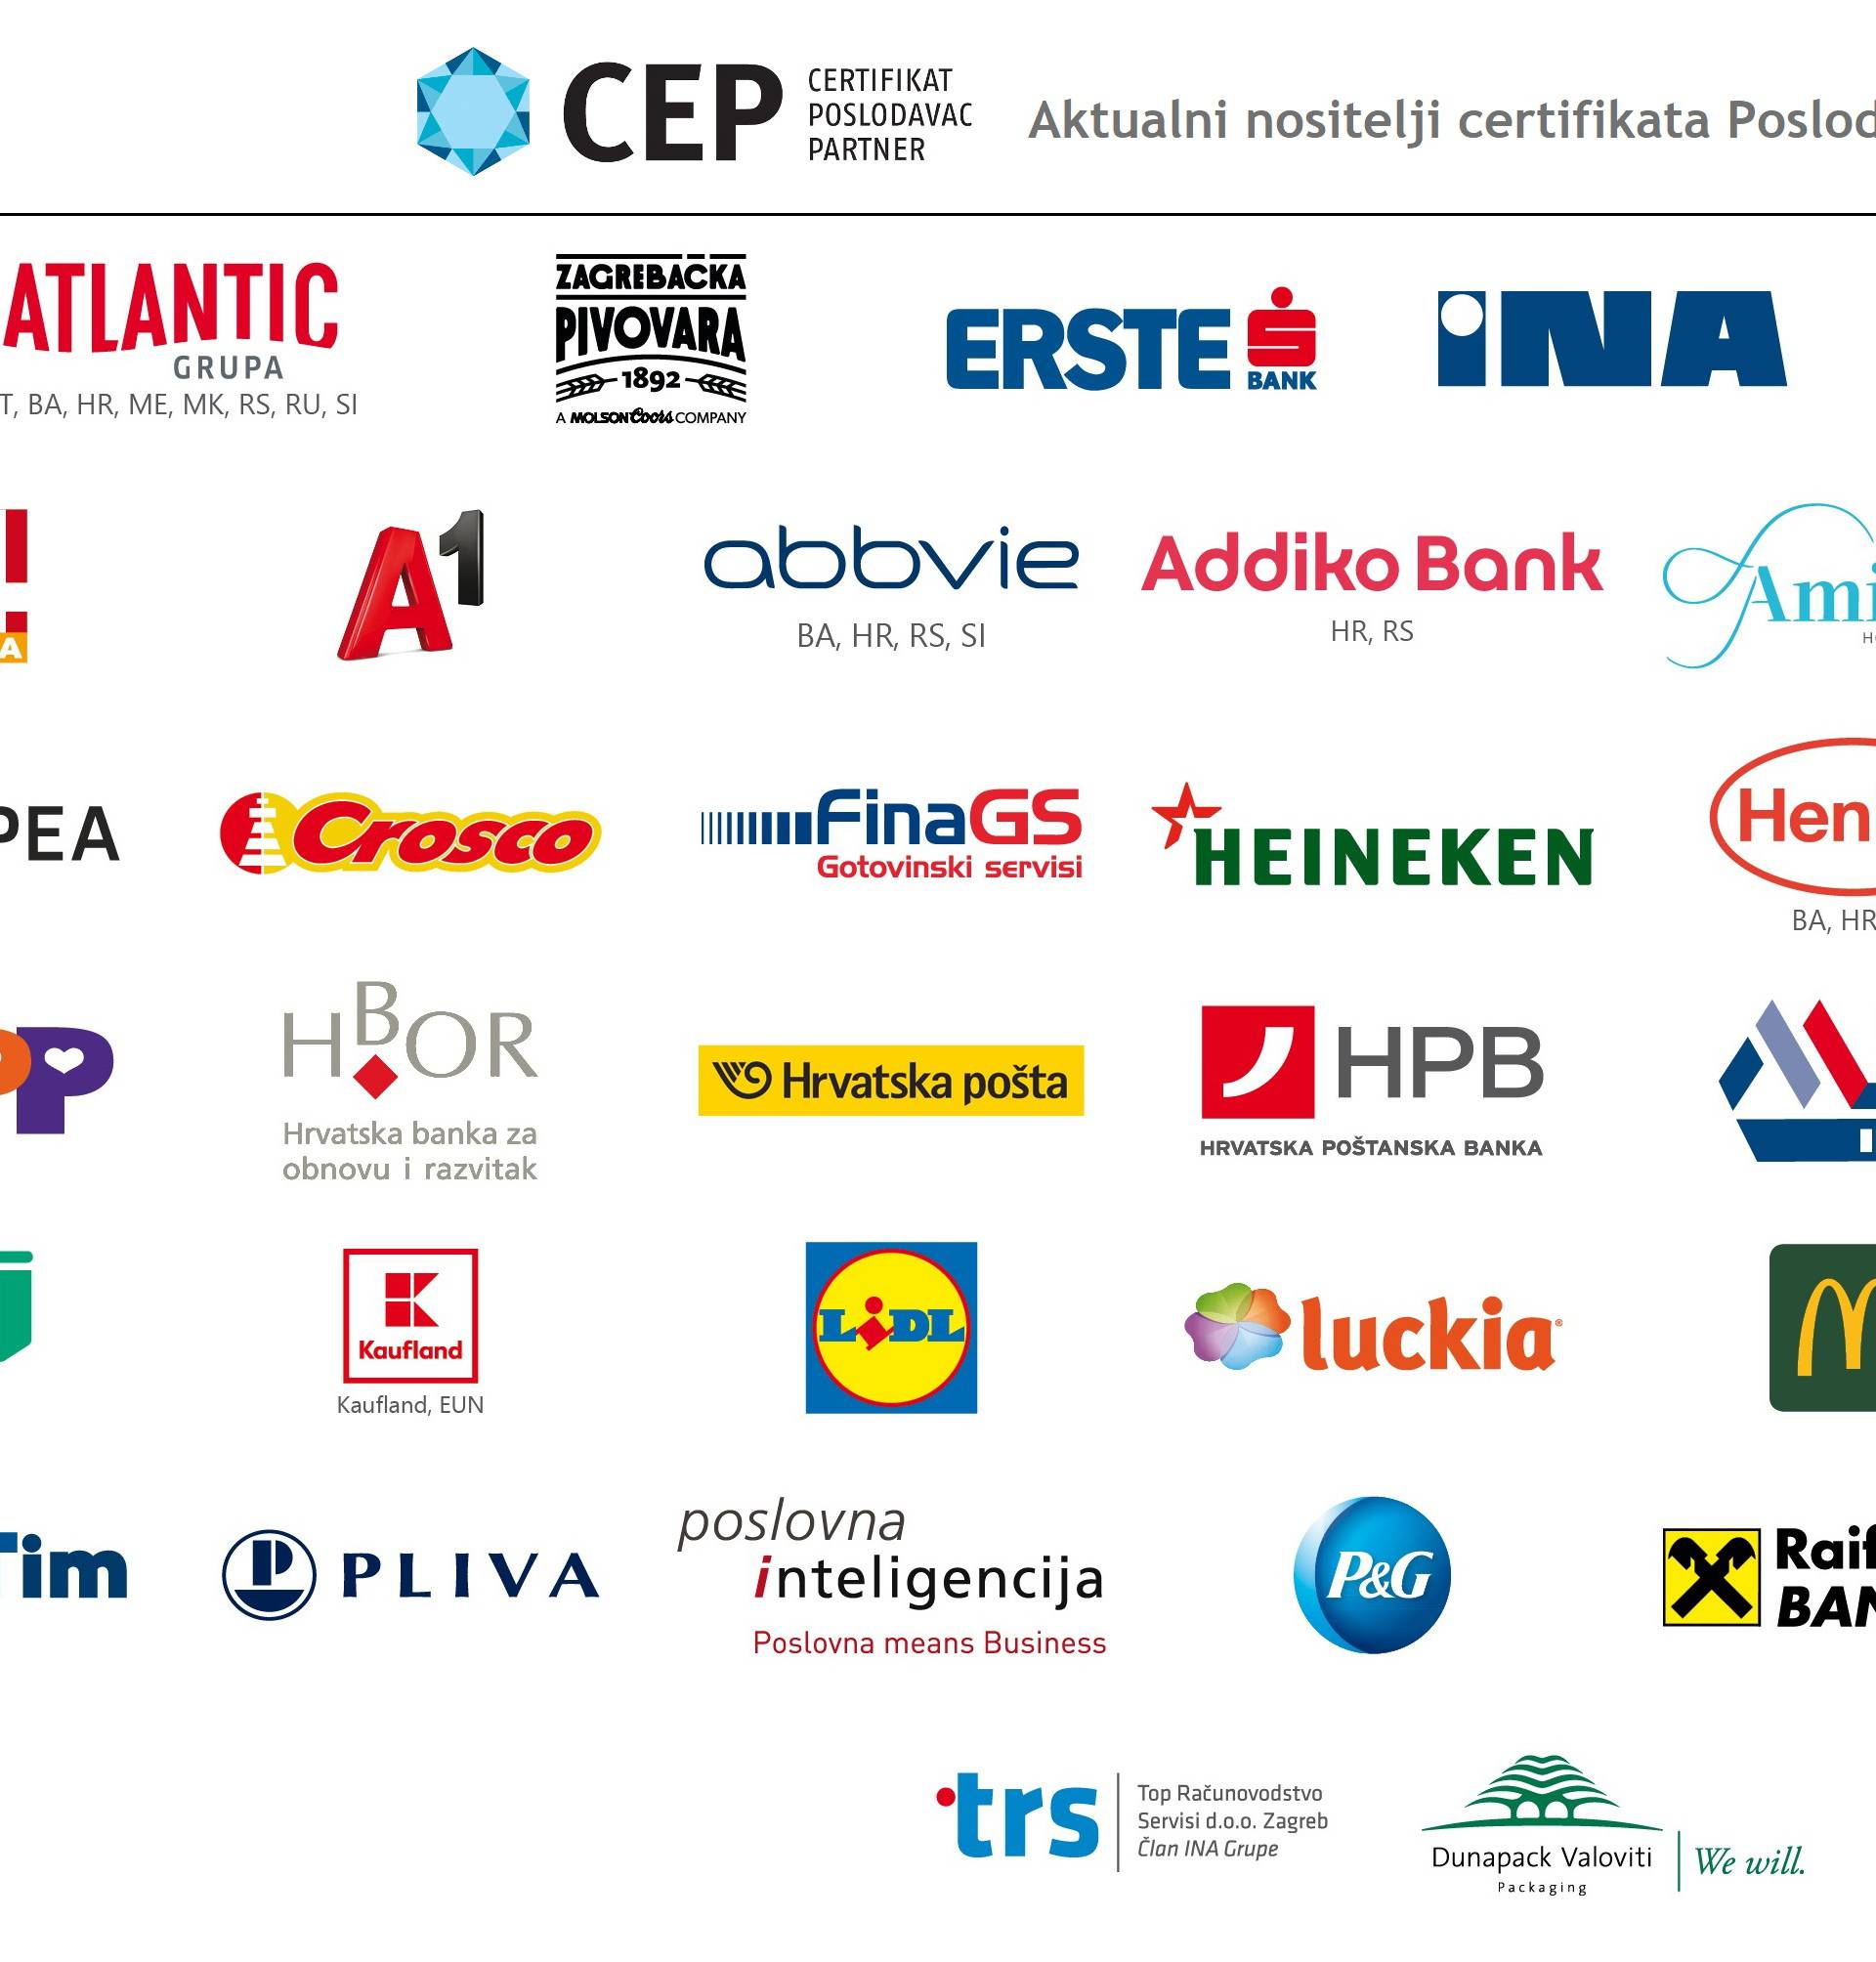 Hrvatskoj pošti treći put certifikat Poslodavac Partner